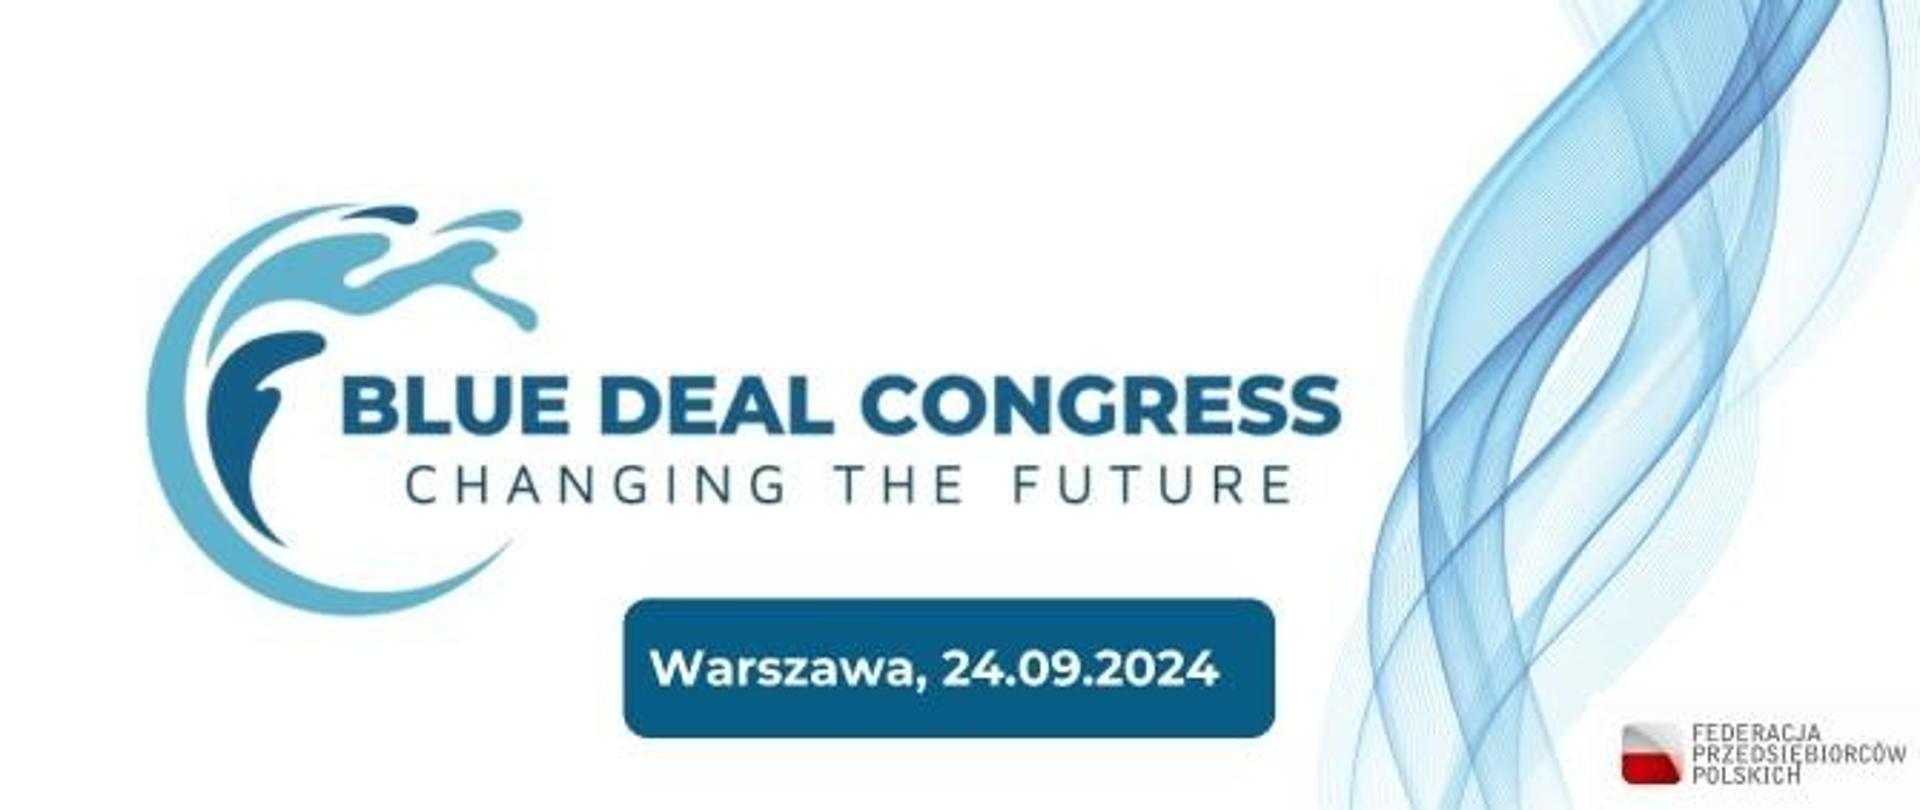 Plakat informacyjno-promocyjny dot. Kongresu Blue Deal Congress: Changing the future, wydarzenia odbywającego się w dniach 24 września 2024 roku oraz opis dot. Kongresu